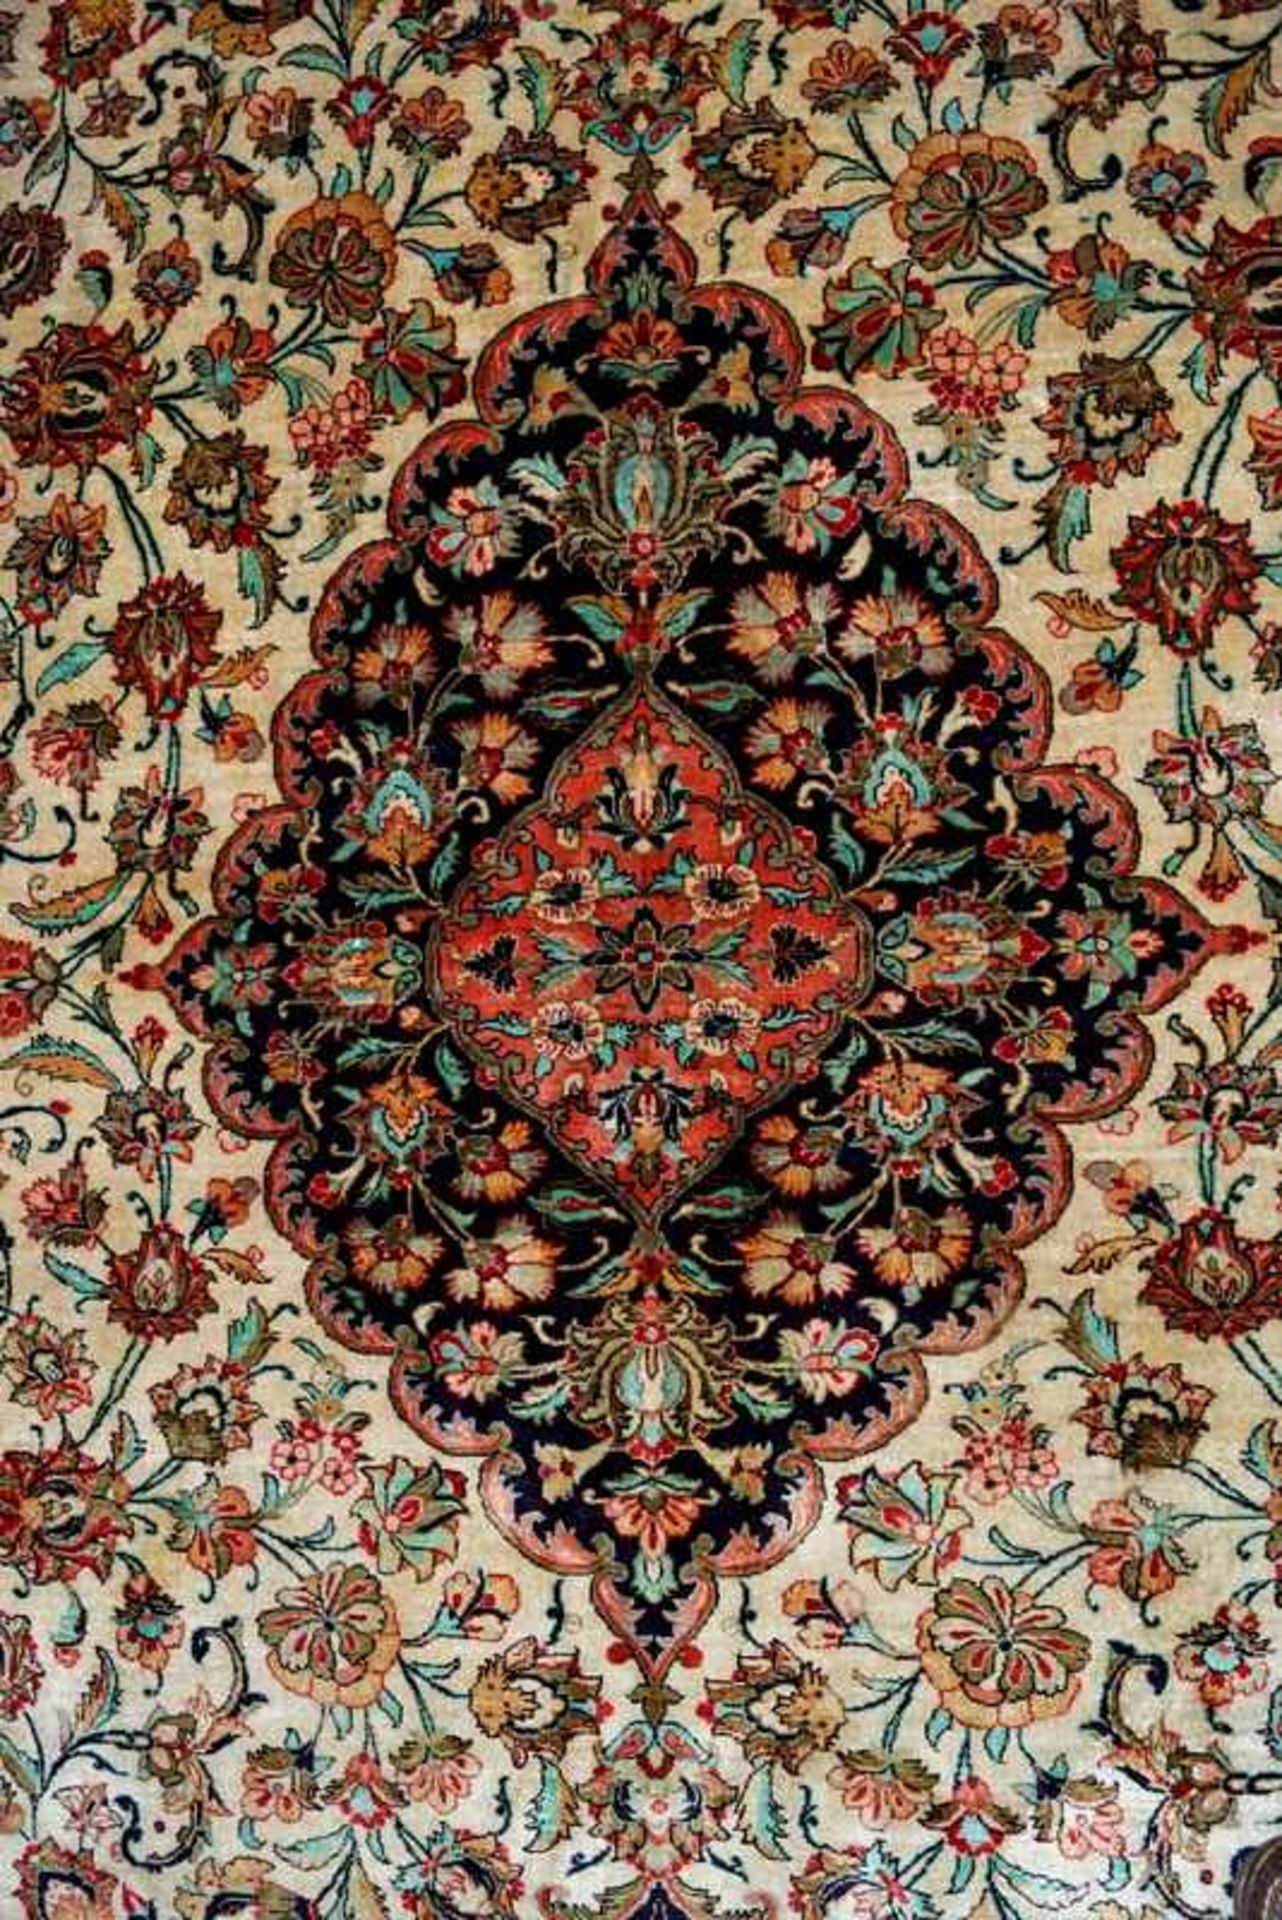 Großer Persischer Seidenteppich 303 x 204cm, Seide auf Seide, guter Zustand, sehr feine Knüpfung ca. - Image 4 of 5